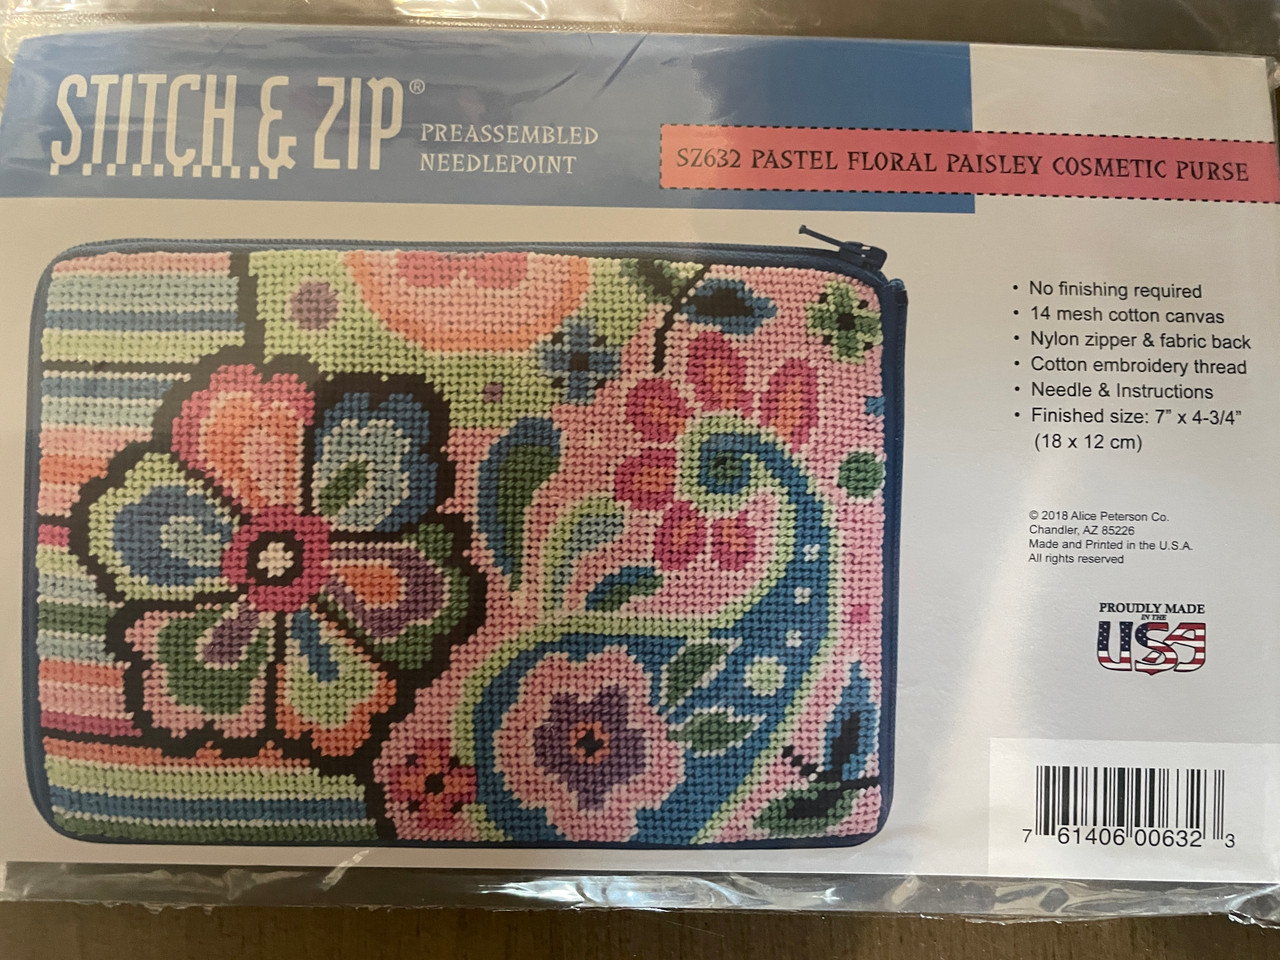 Stitch and Zip Needlepoint Kits